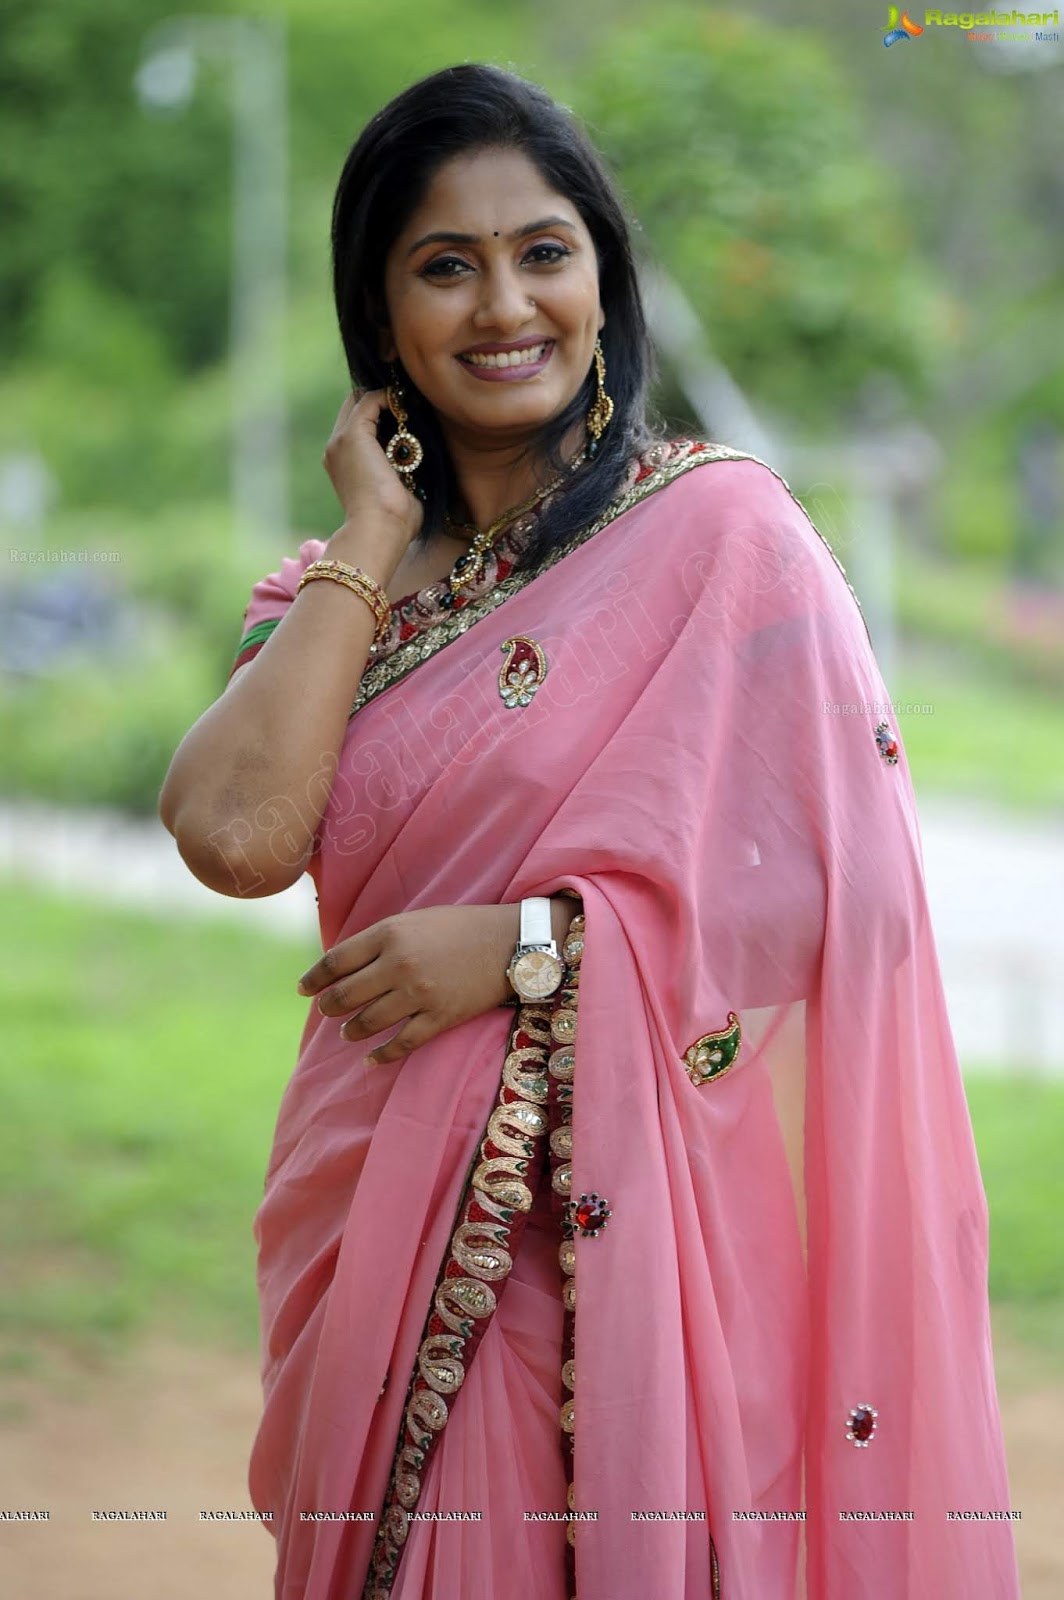 TV Anchor JHANSI stills in pink saree.